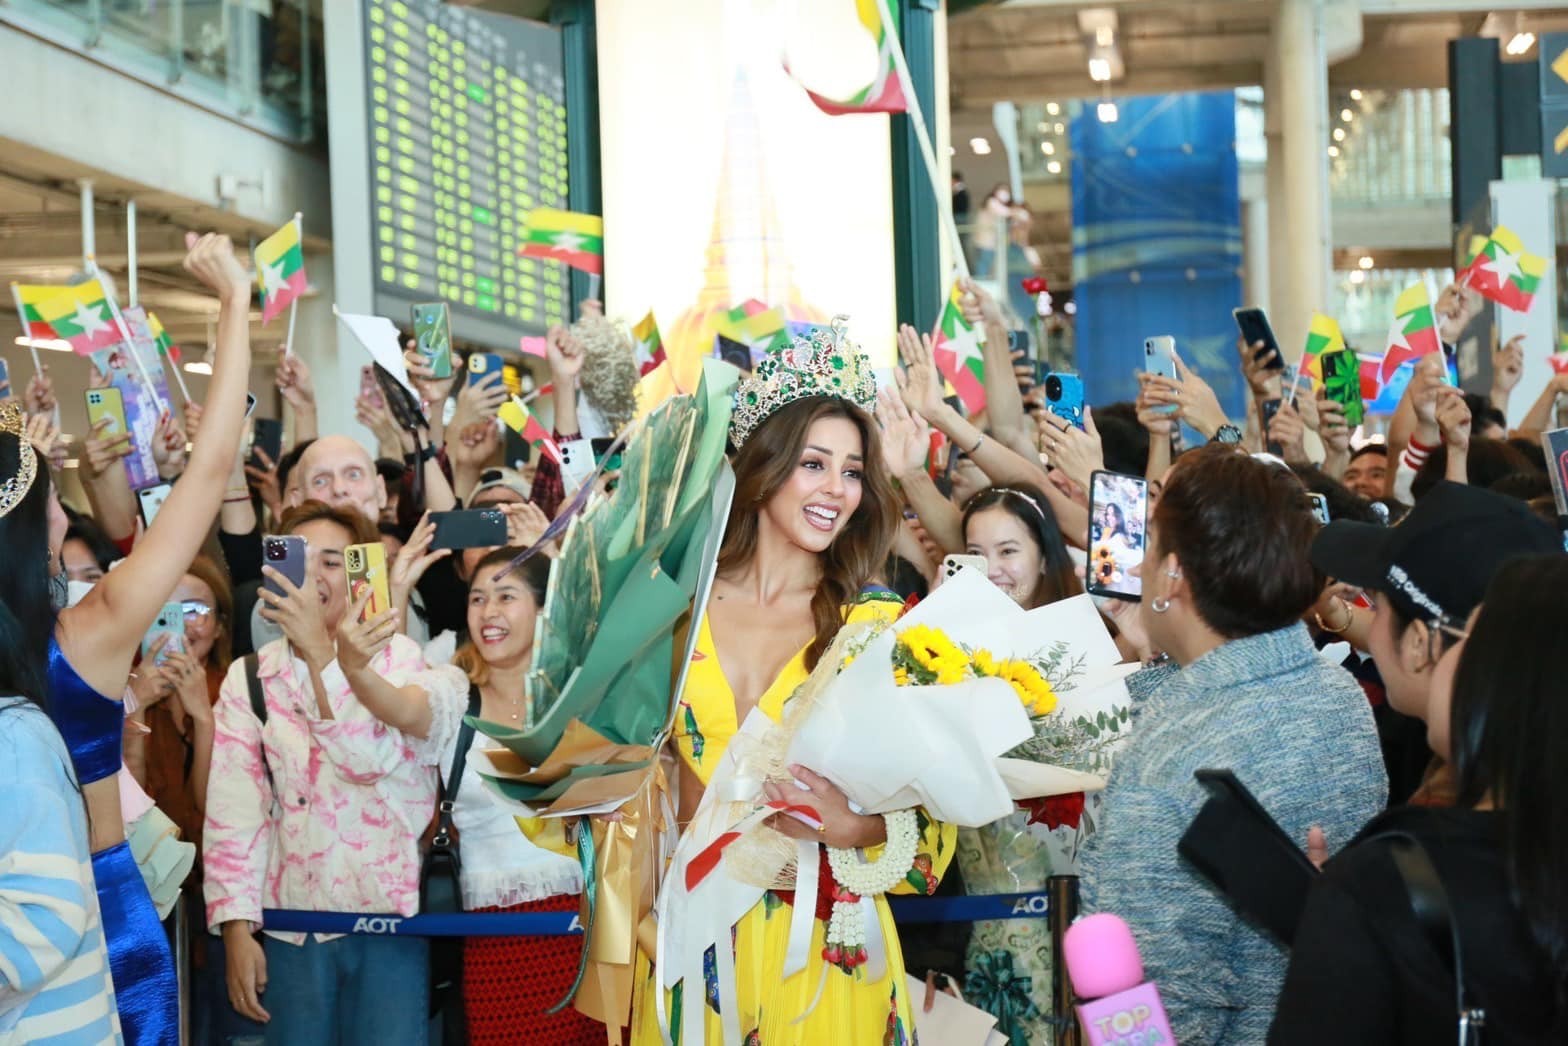 Hoa hậu Hòa bình Thái Lan bị fan Myanmar xô ngã ở sân bay - Ảnh 2.